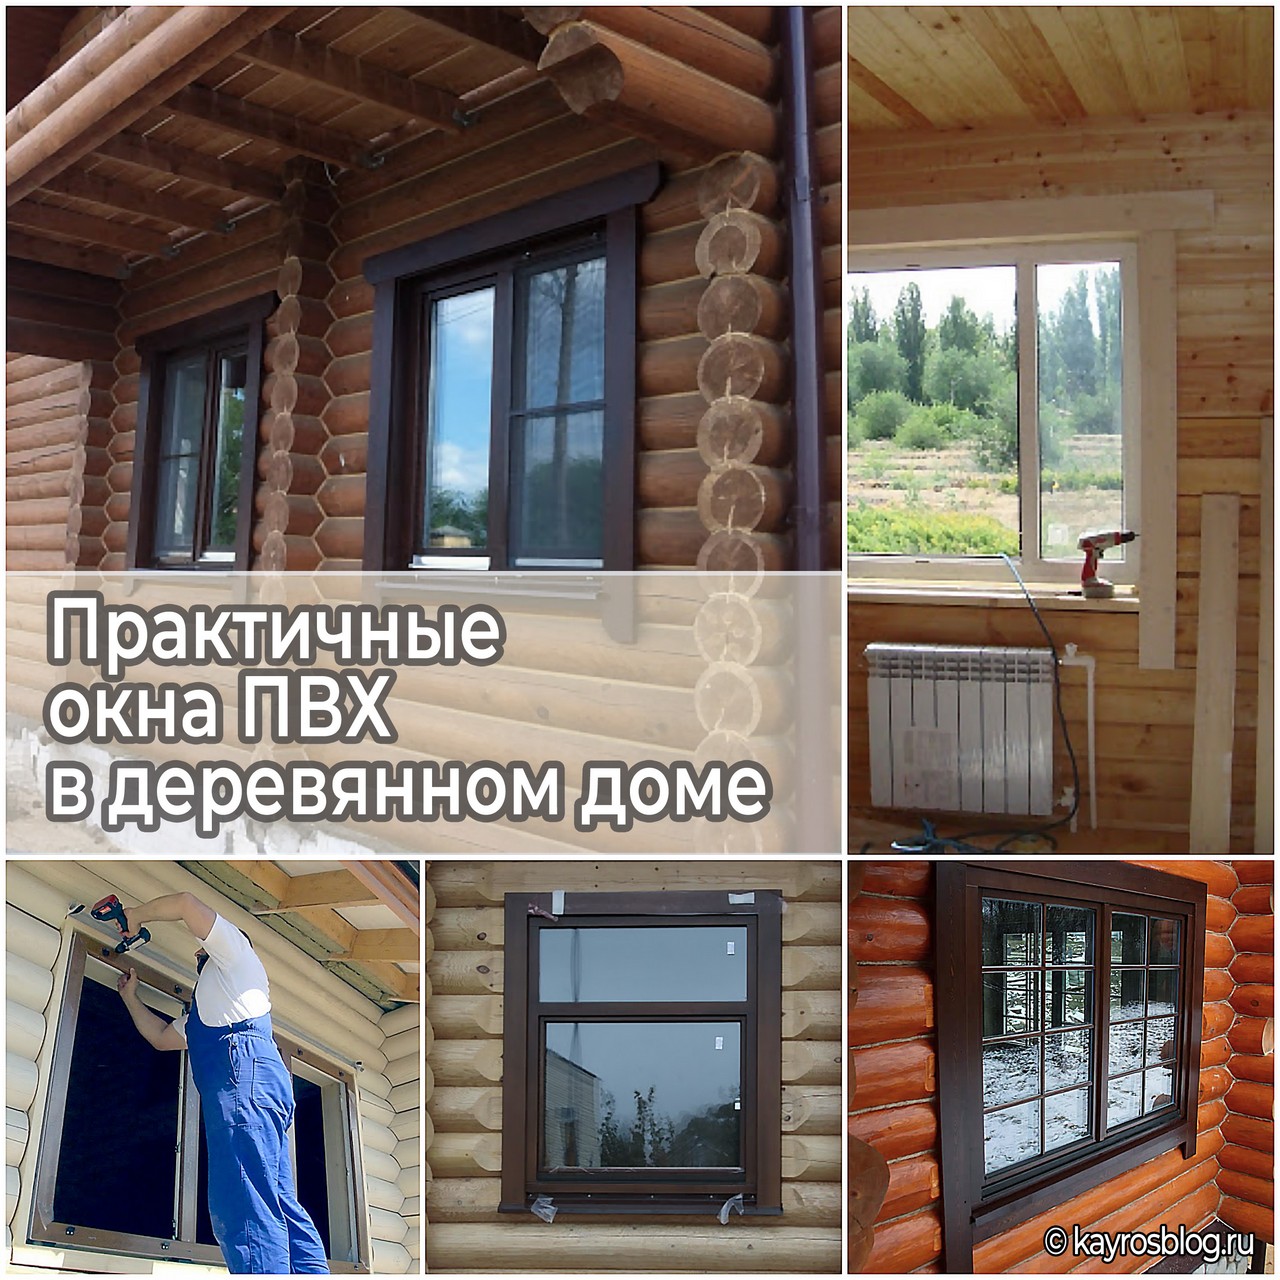 Практичные окна ПВХ в деревянном доме